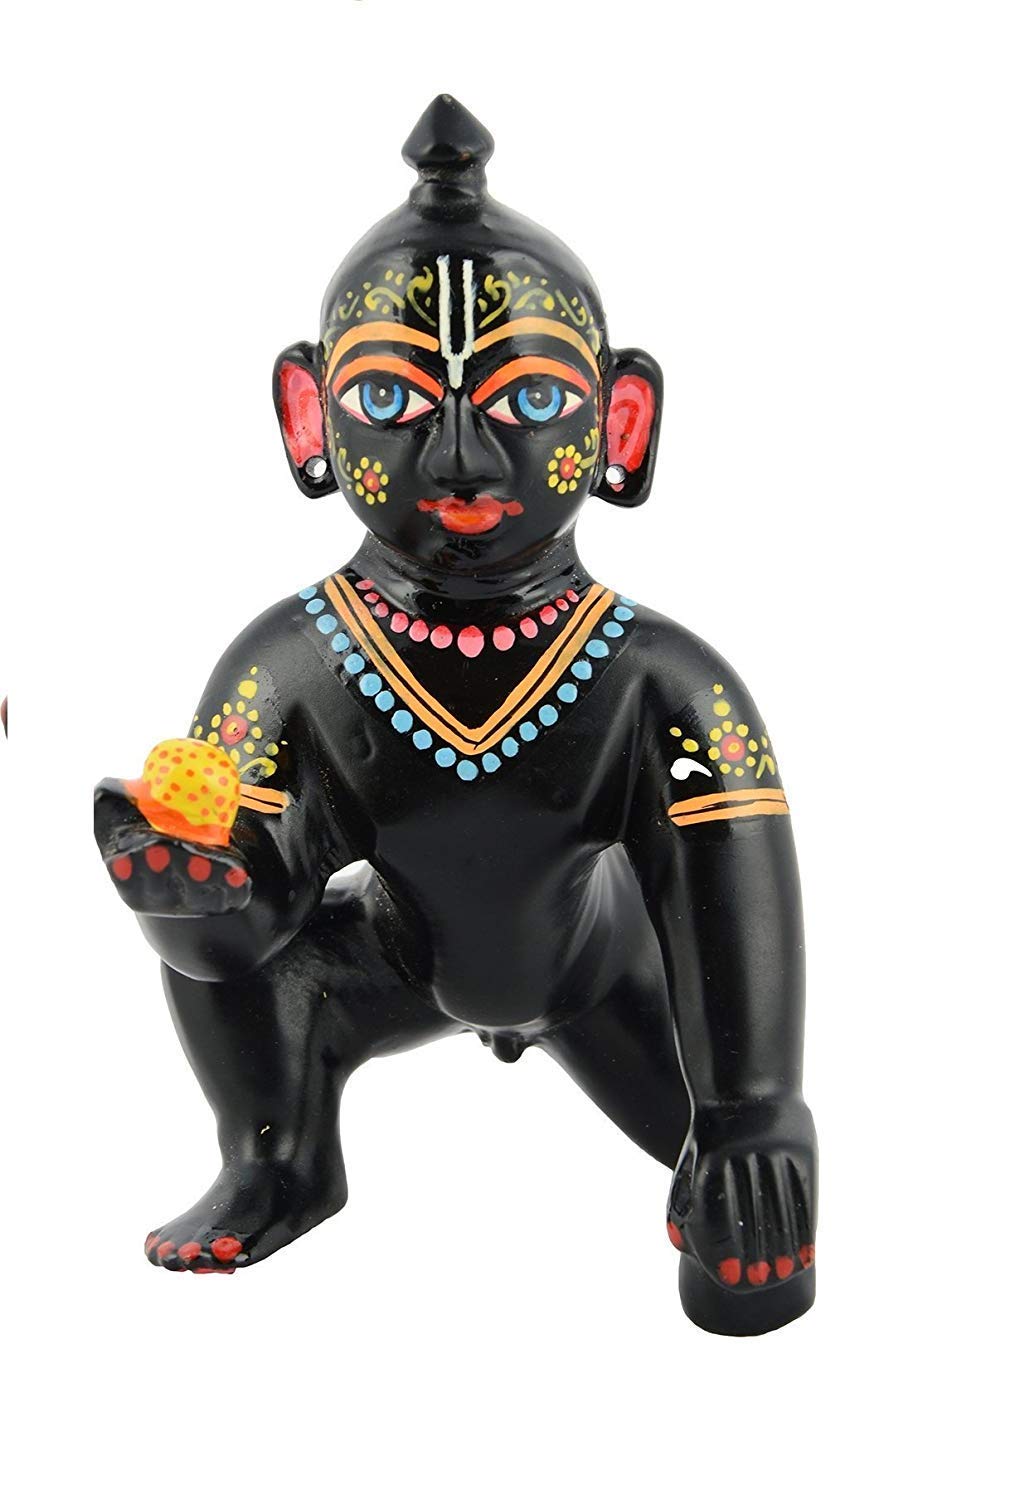 काले रंग में पीतल के लड्डू गोपाल की मूर्ति/बेबी कृष्ण बाल गोपाल मूर्ति आकार 3 संख्या (10 सेमी)